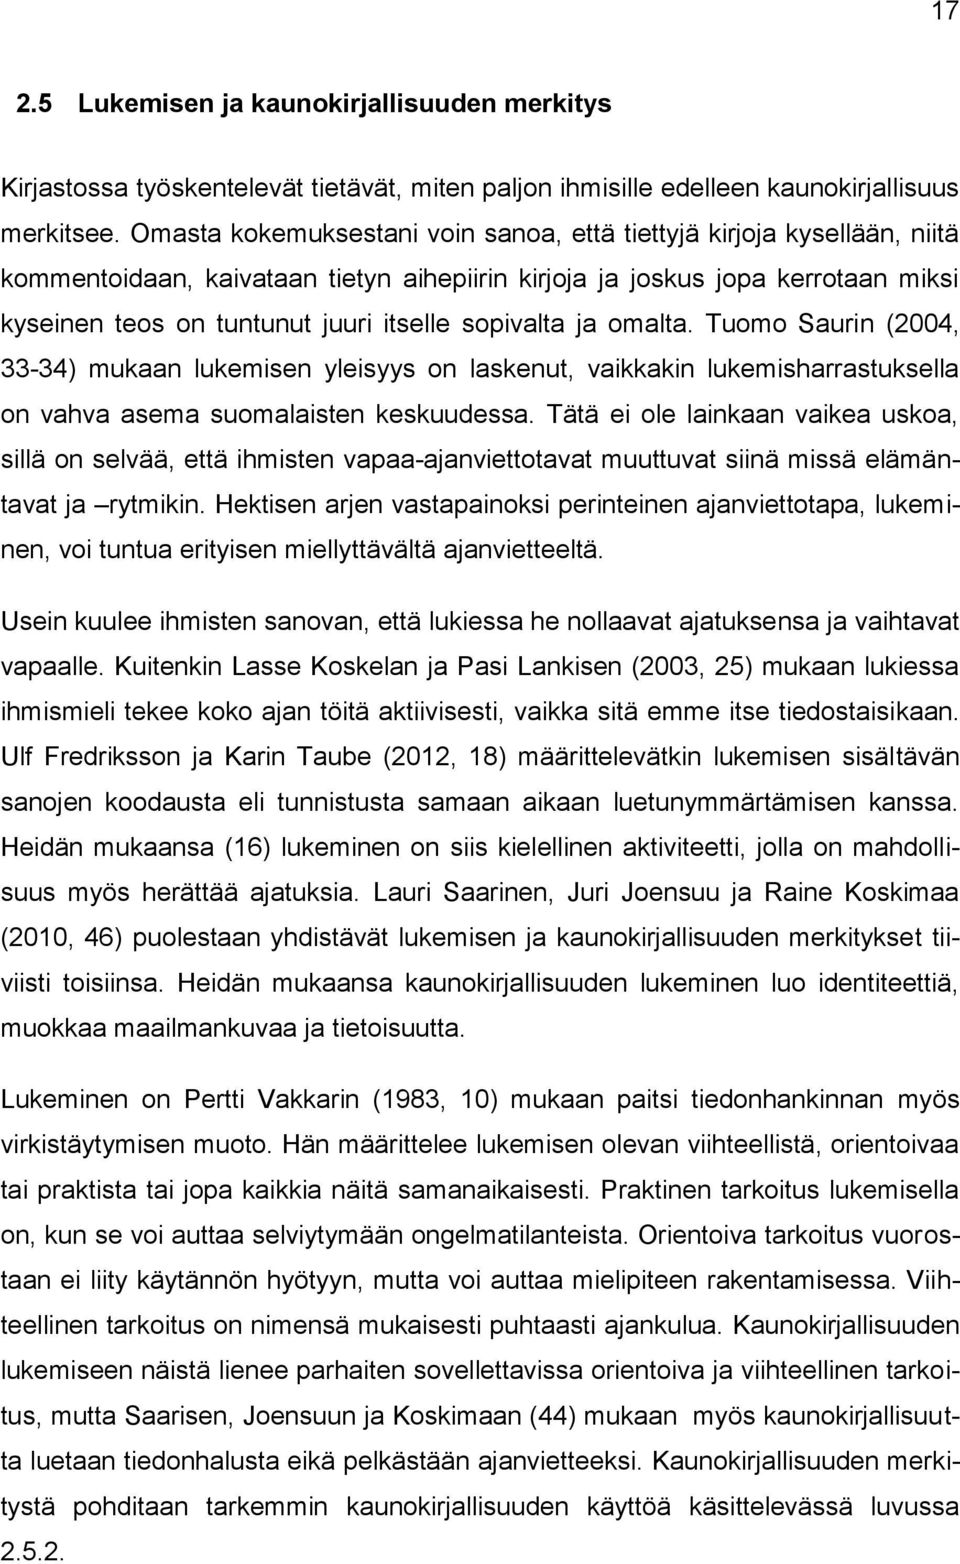 sopivalta ja omalta. Tuomo Saurin (2004, 33-34) mukaan lukemisen yleisyys on laskenut, vaikkakin lukemisharrastuksella on vahva asema suomalaisten keskuudessa.